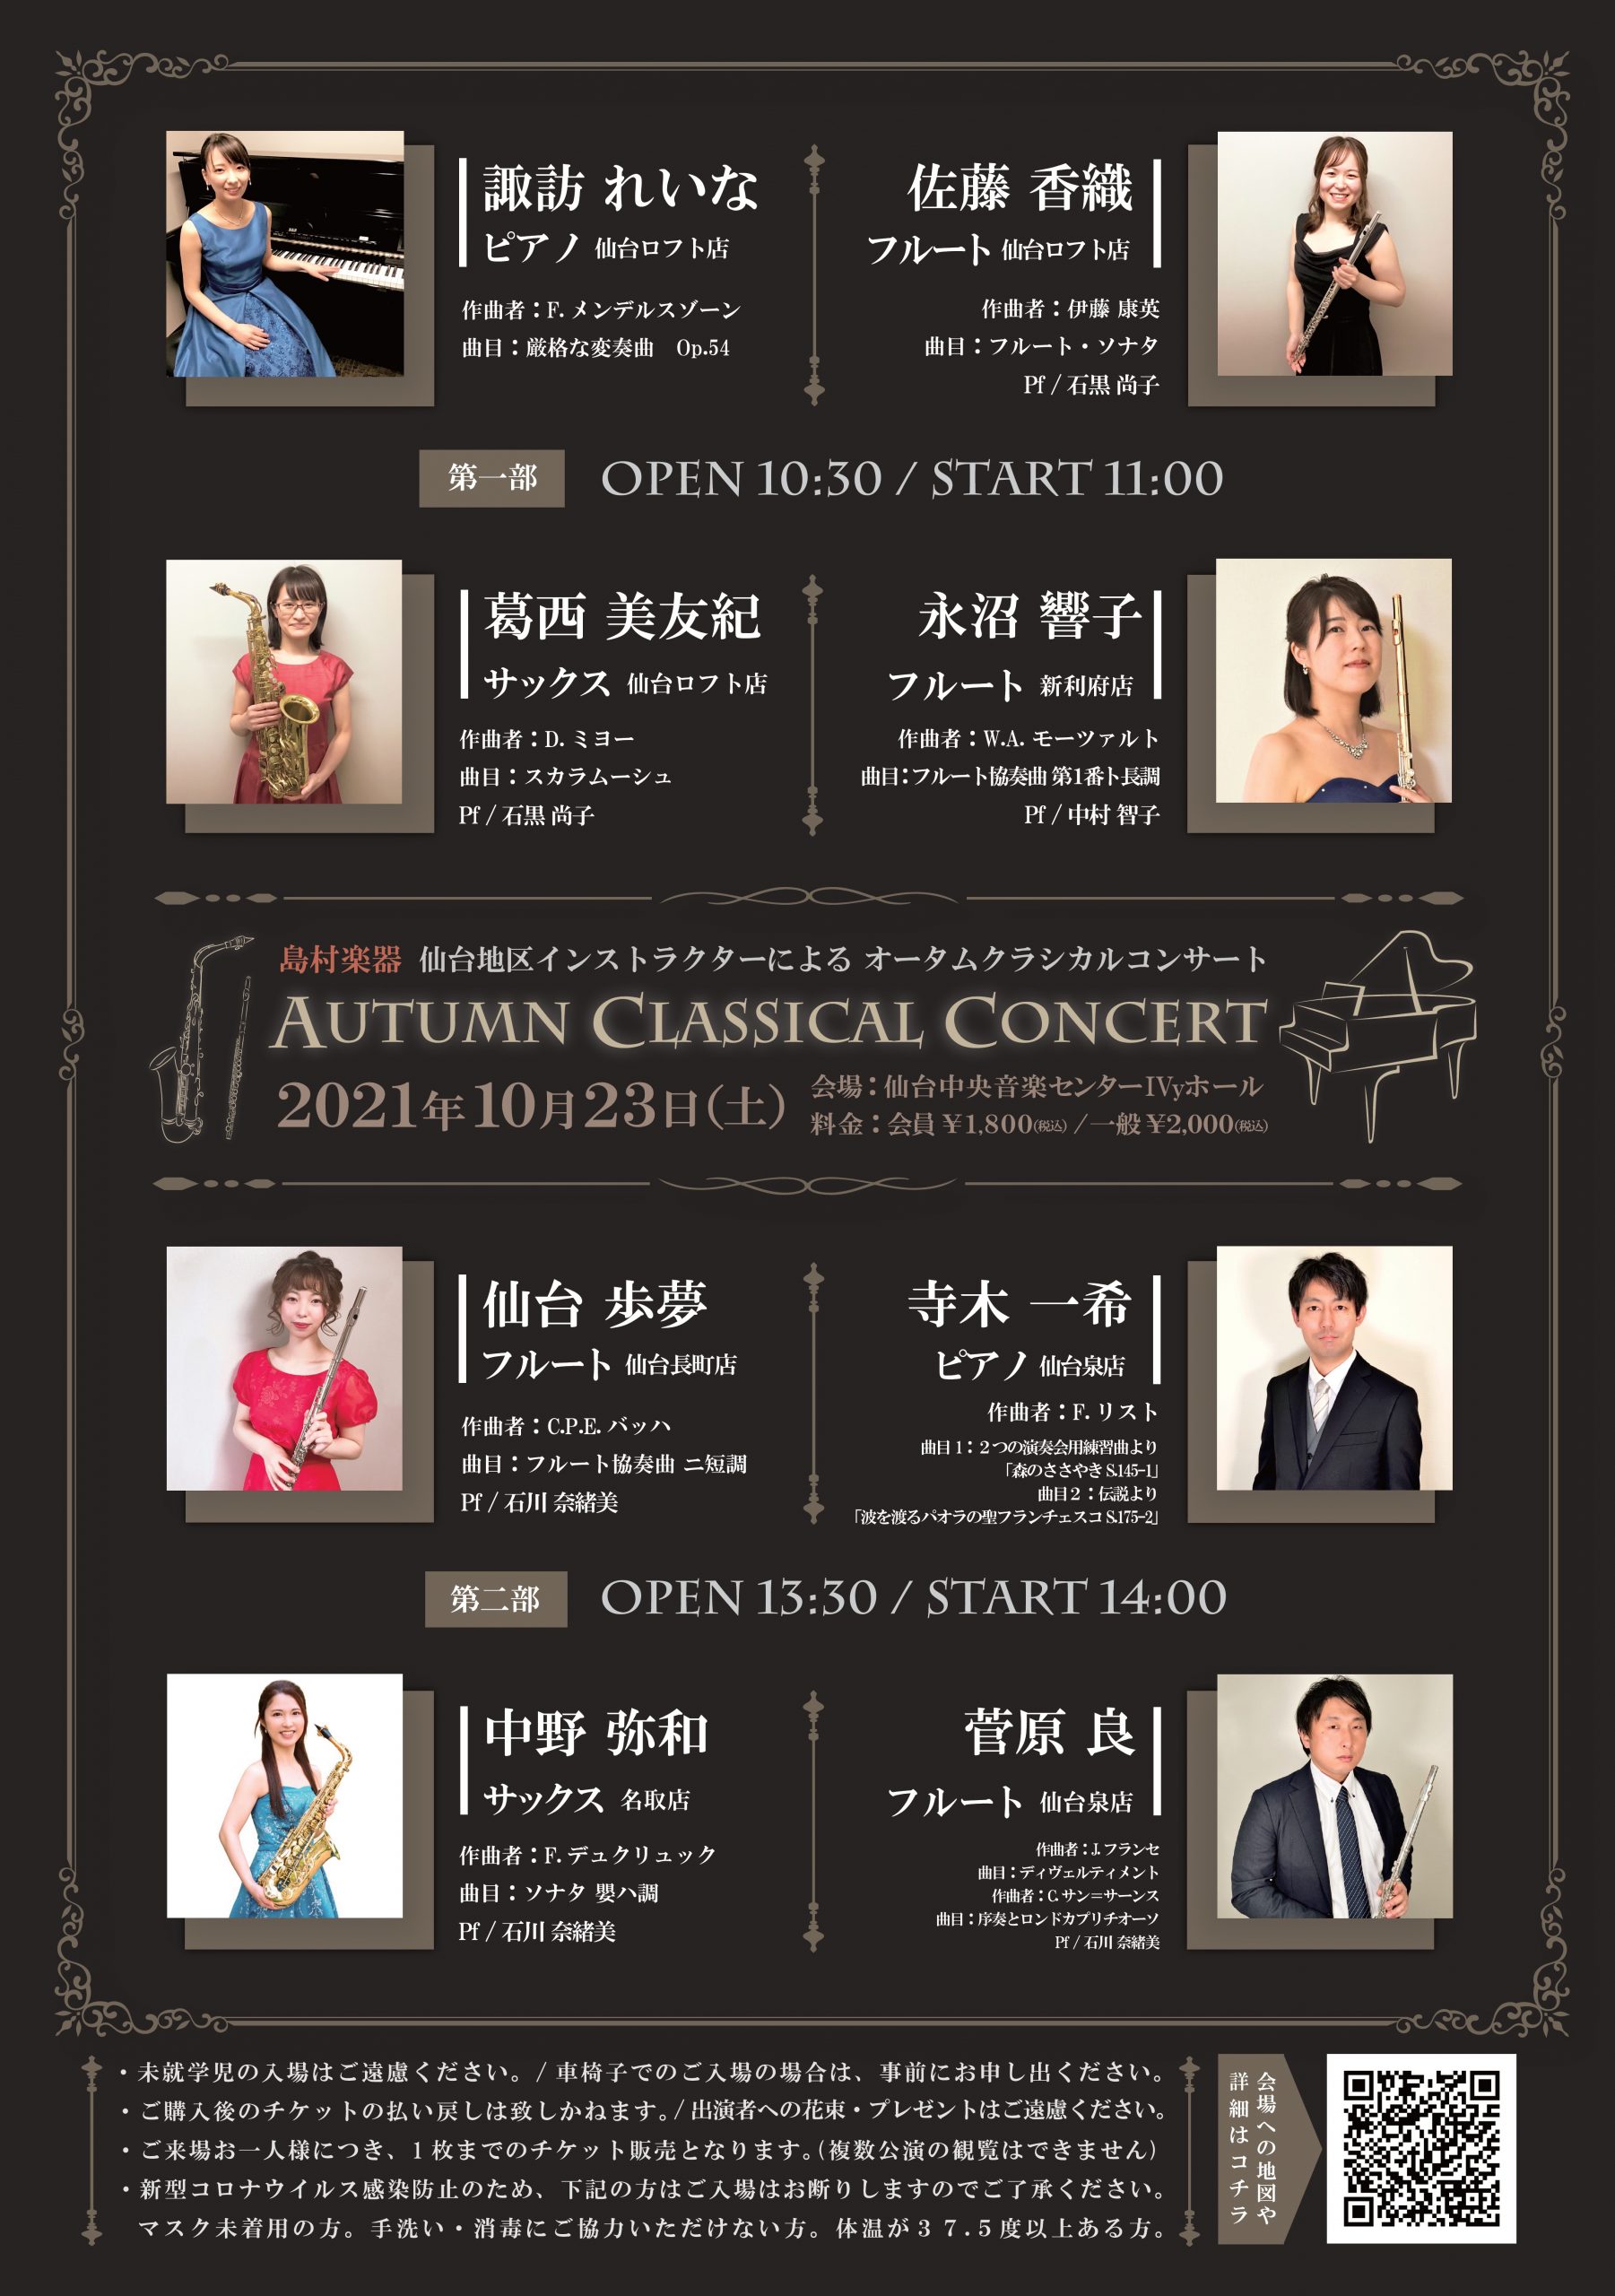 10/23(土)島村楽器 仙台地区 インストラクターによるAutumn Classical Concert